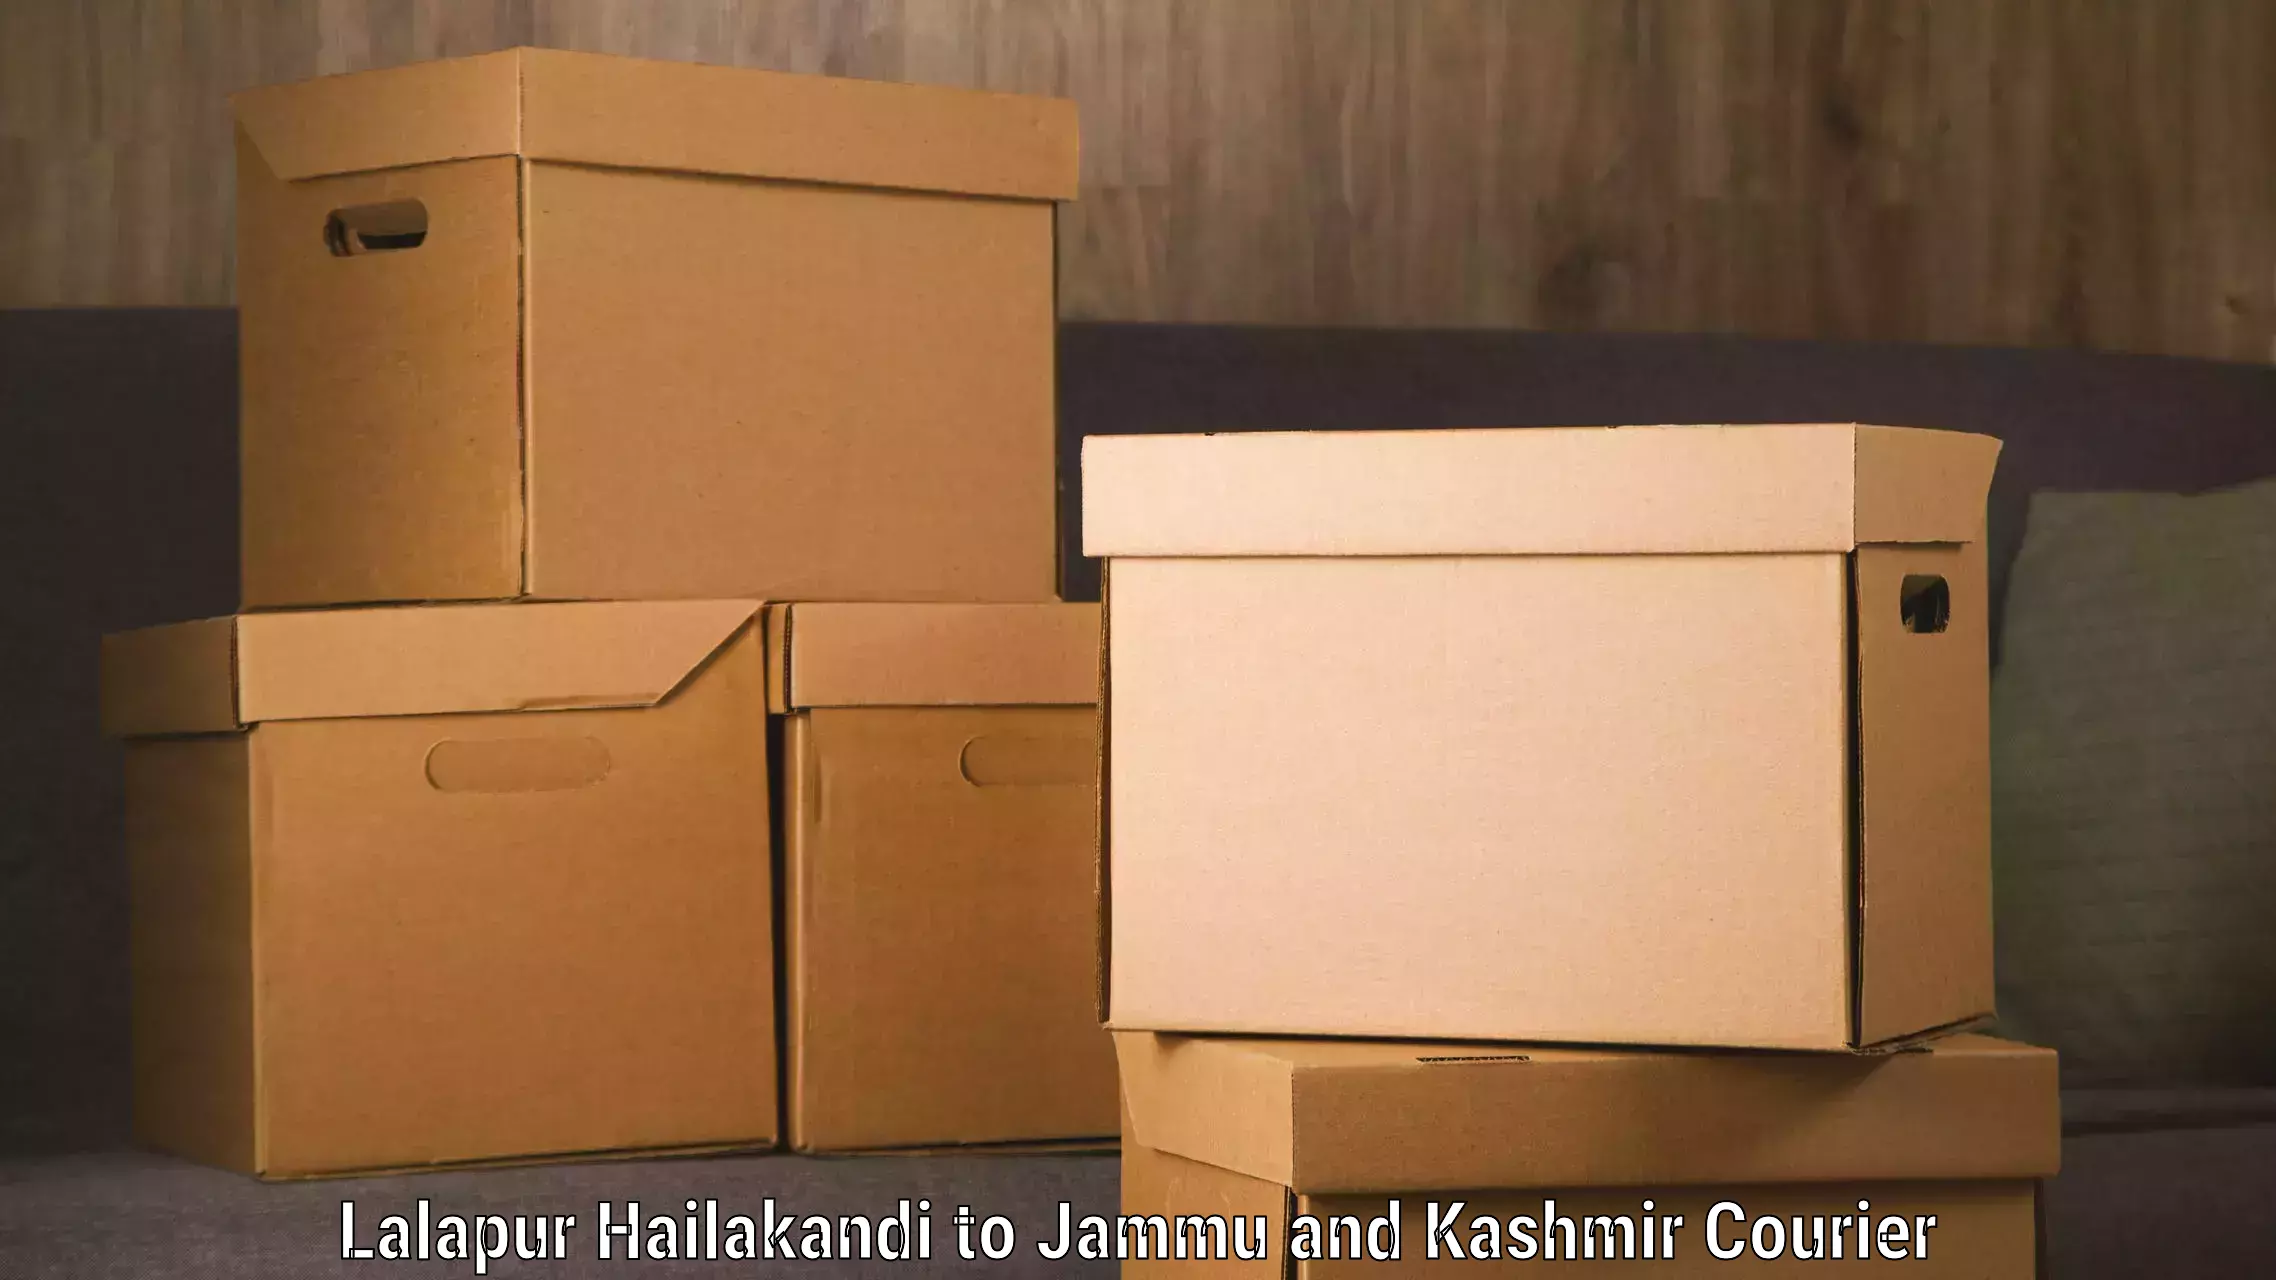 Luggage transport operations Lalapur Hailakandi to Rajouri